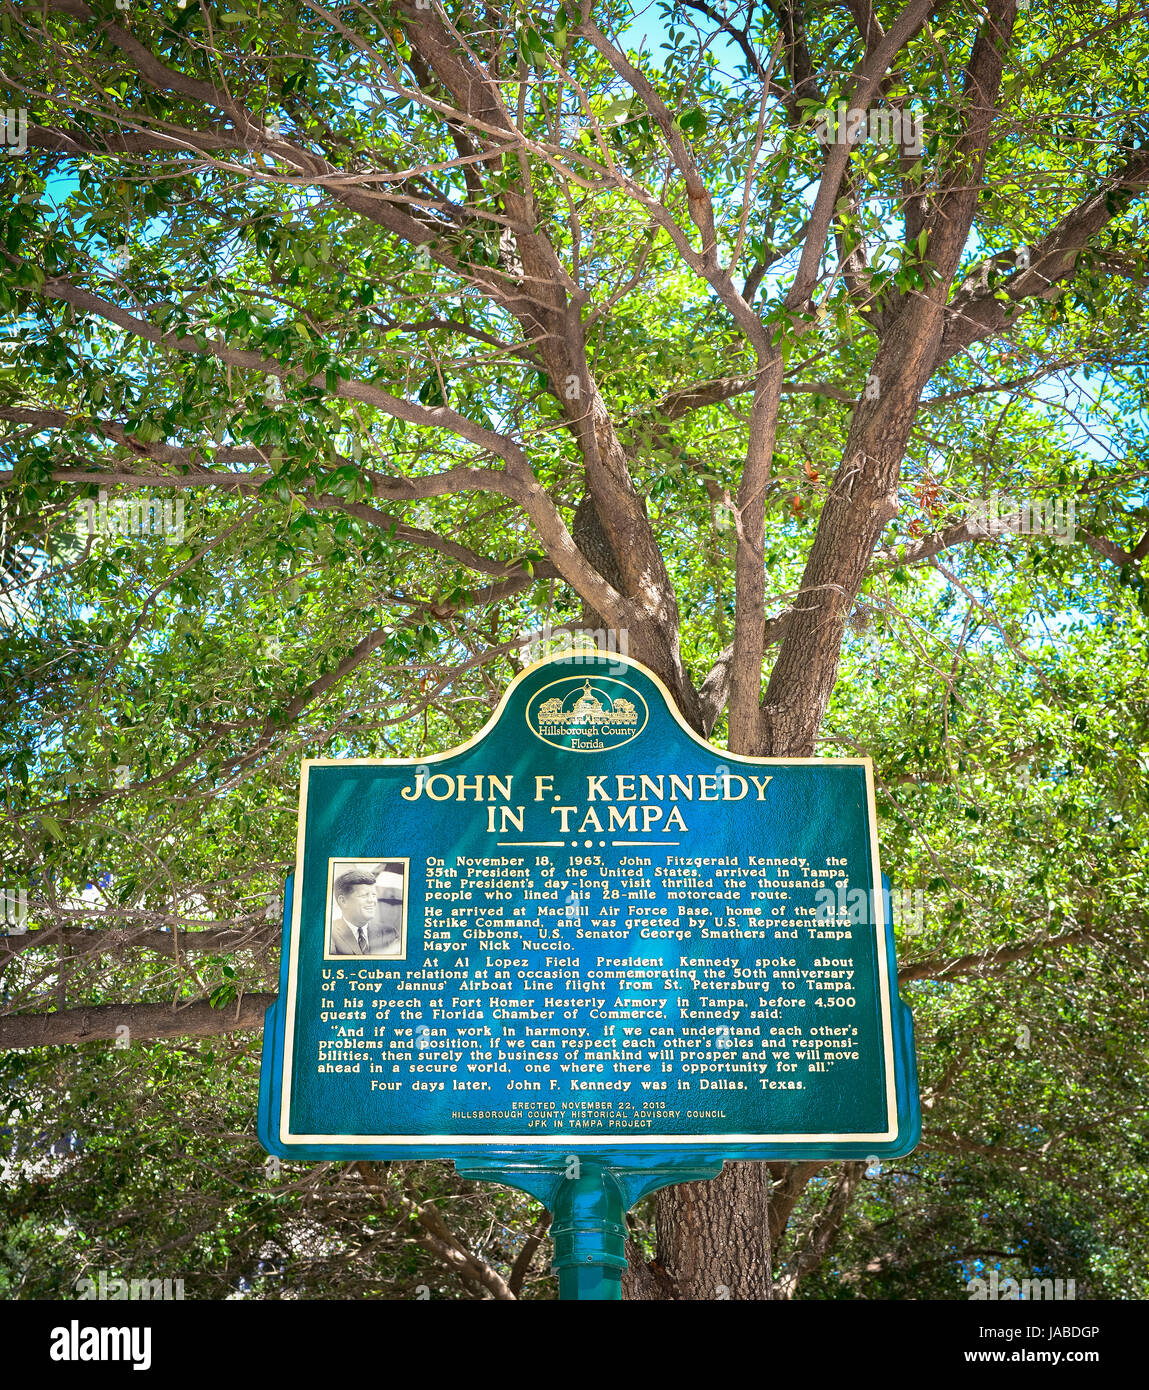 Kennedy in Tampa historischen Zeichen in Innenstadt Park erinnert, dass Tampa, FL JFKs letzte Station vor Dallas 1963 war. Stockfoto